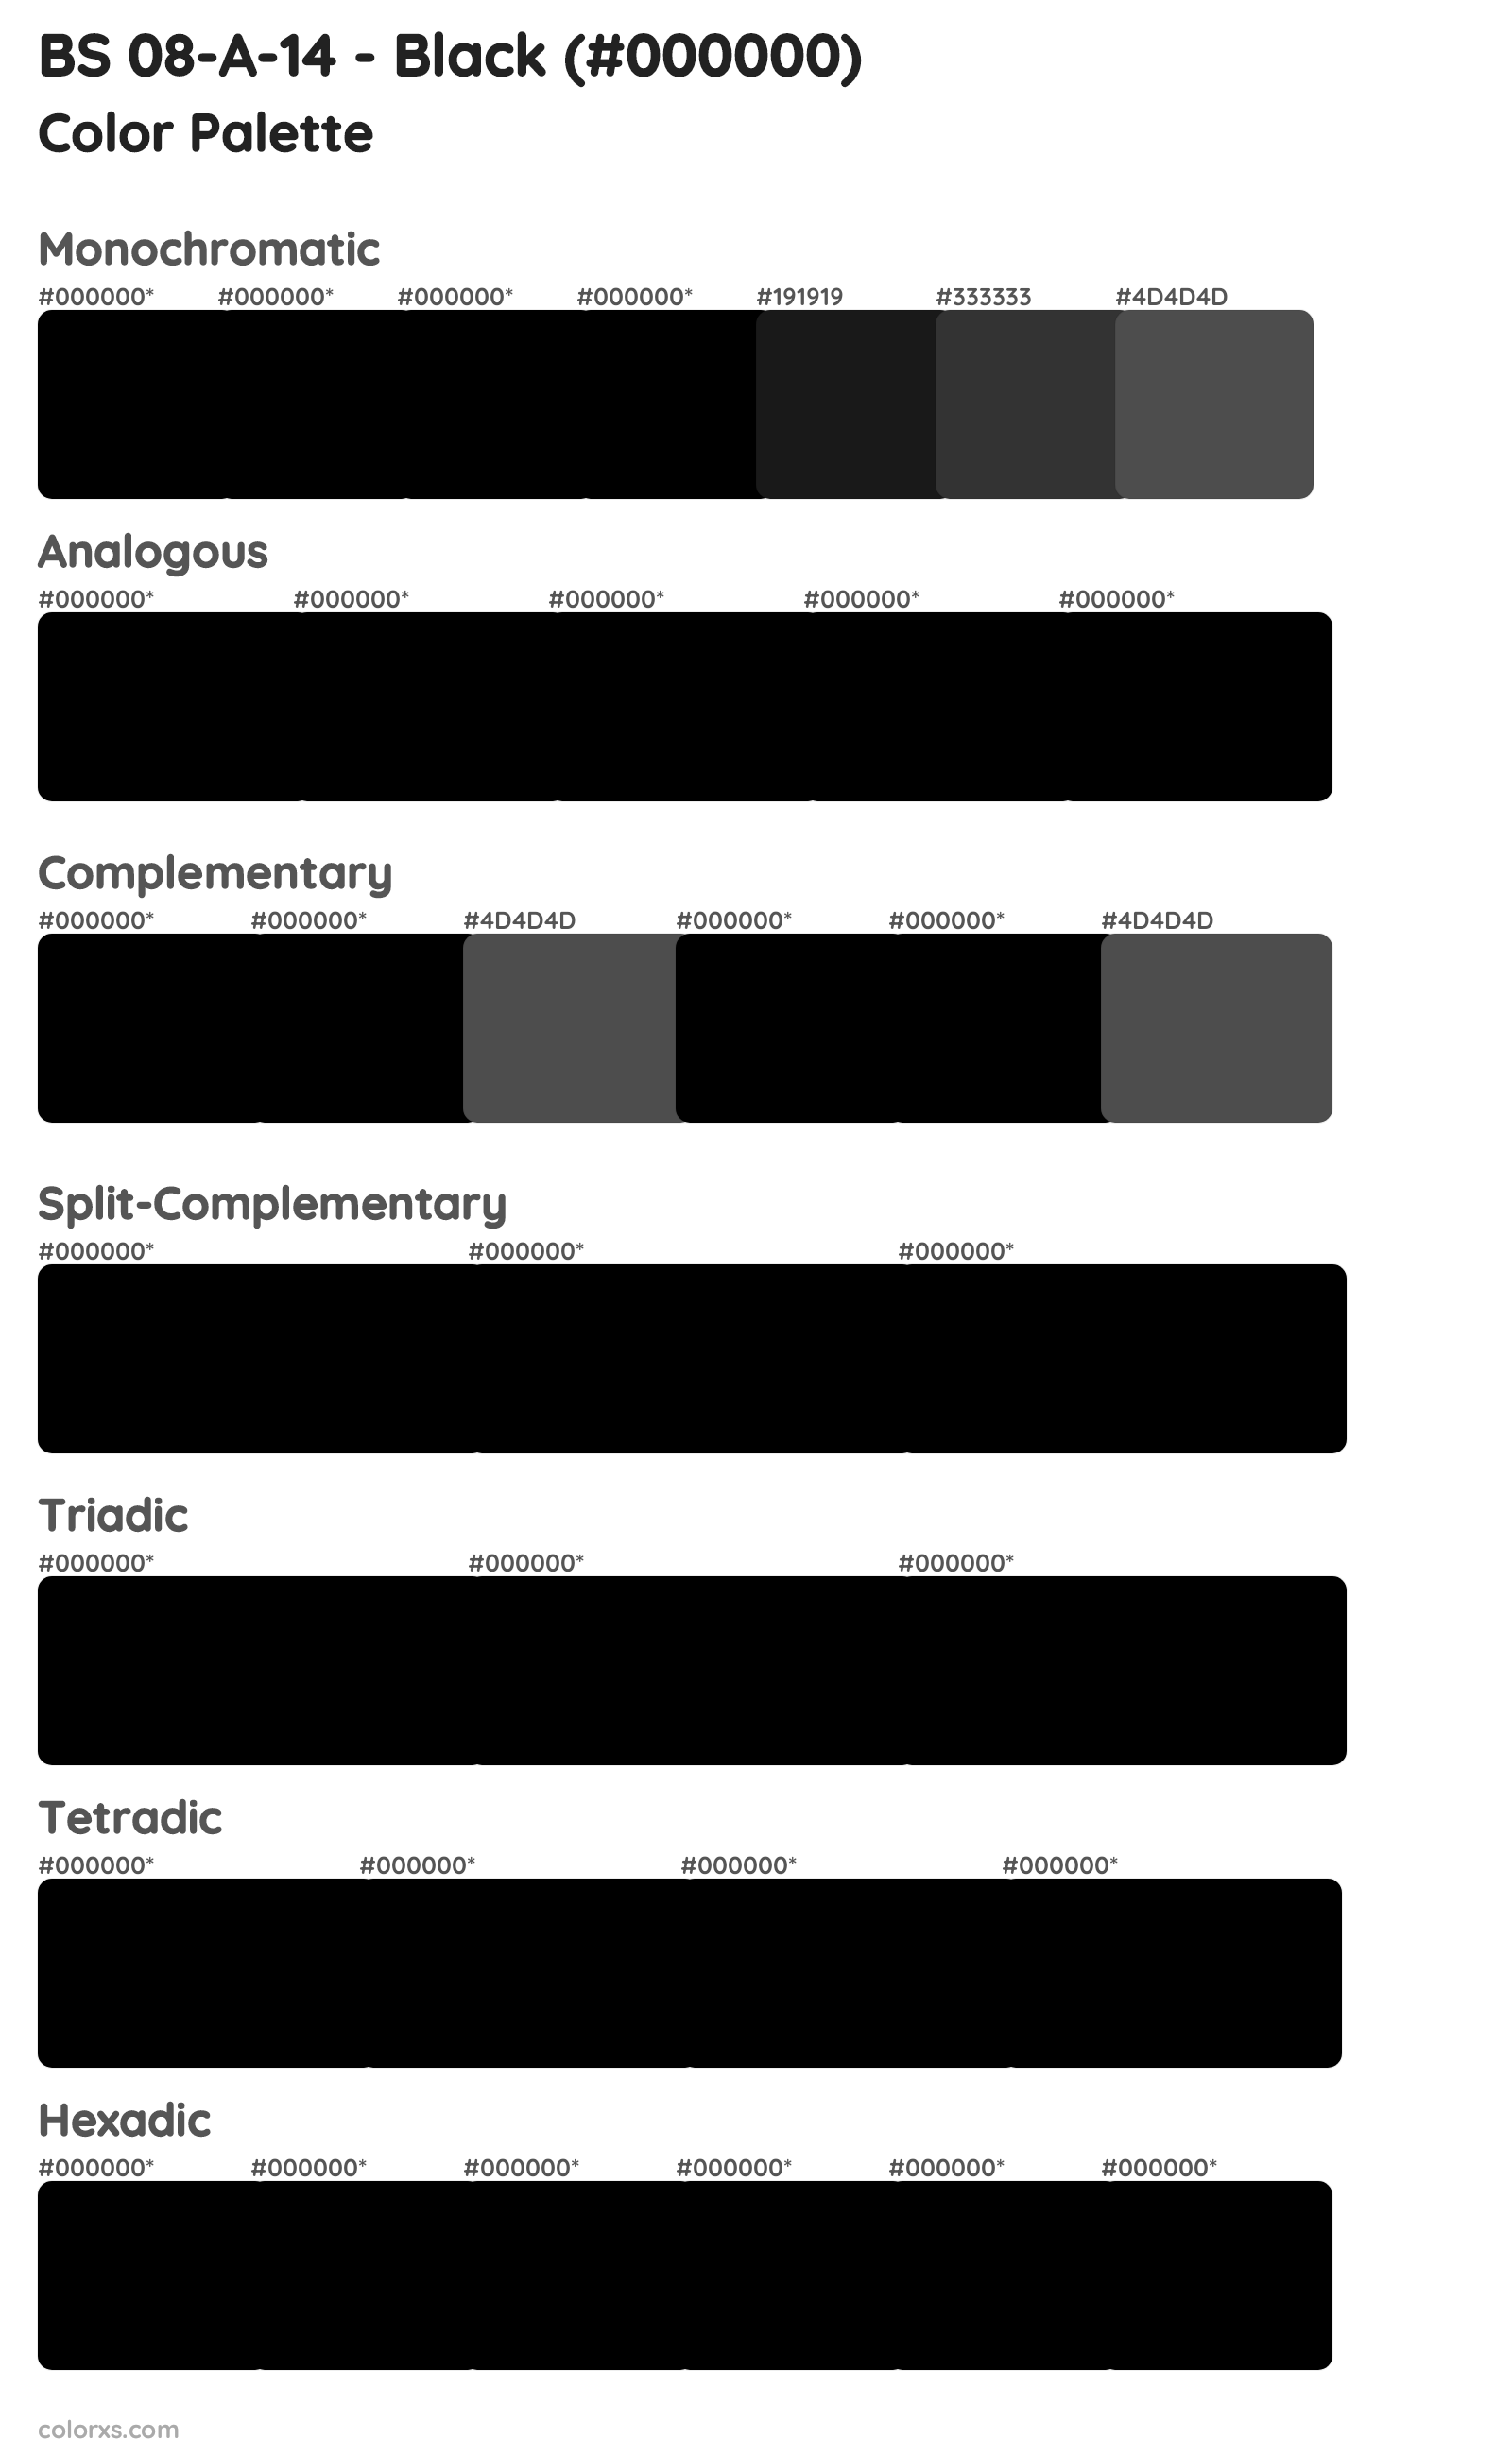 BS 08-A-14 - Black Color Scheme Palettes